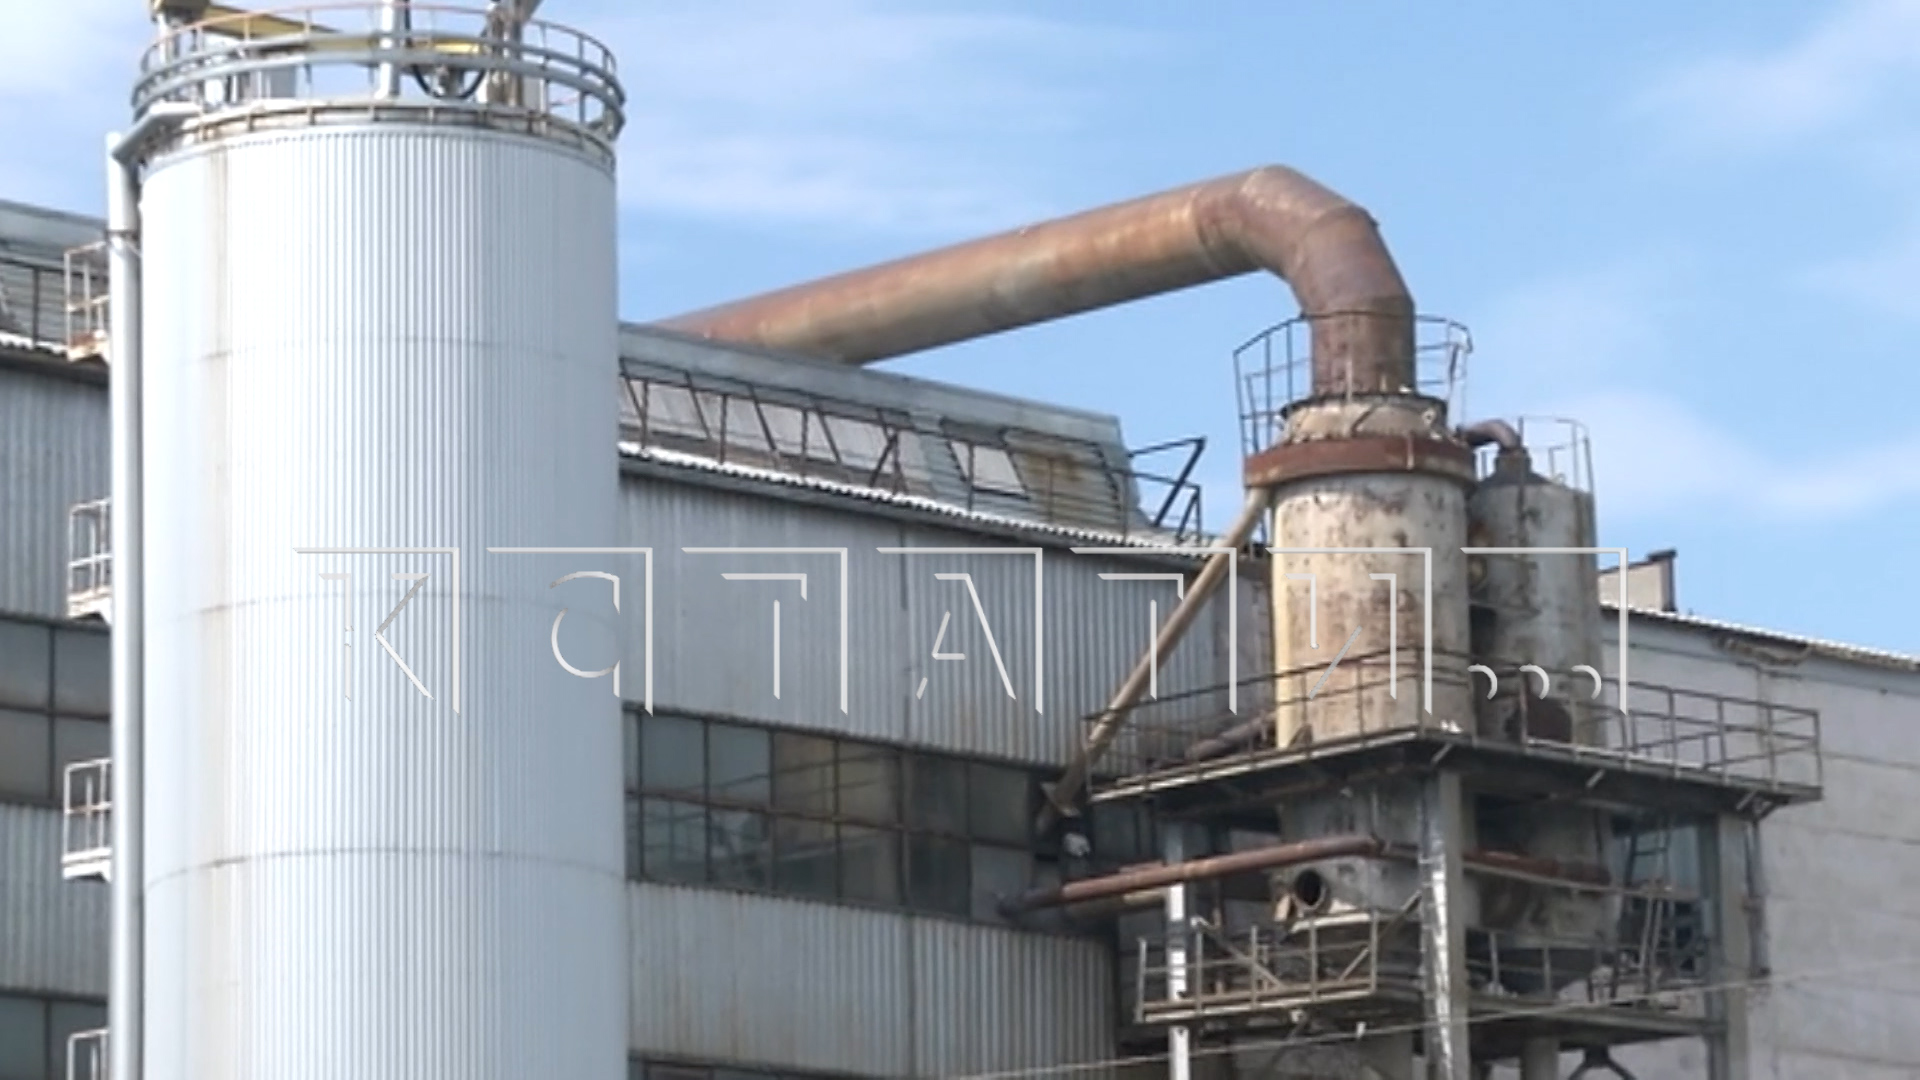 Жители Сергача задыхаются от вони, в которой обвиняют сахарный завод